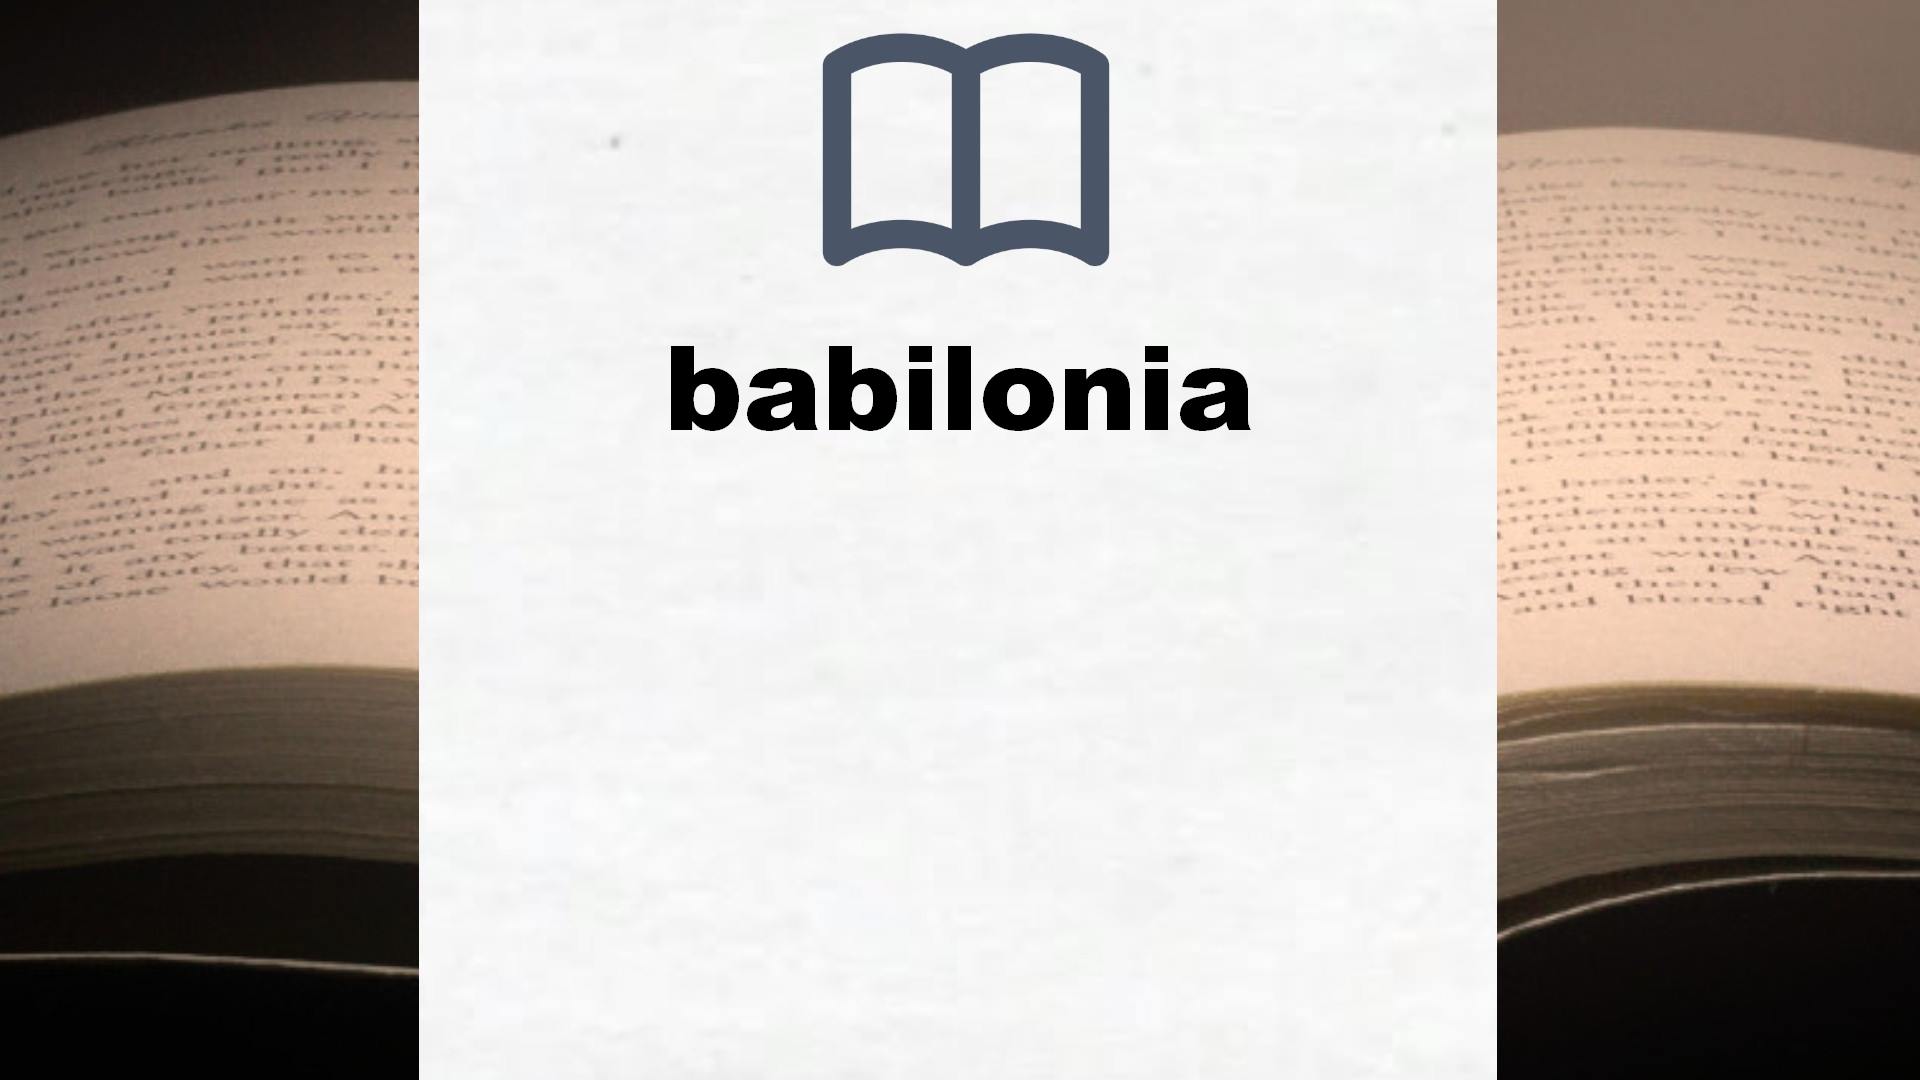 Libros sobre babilonia